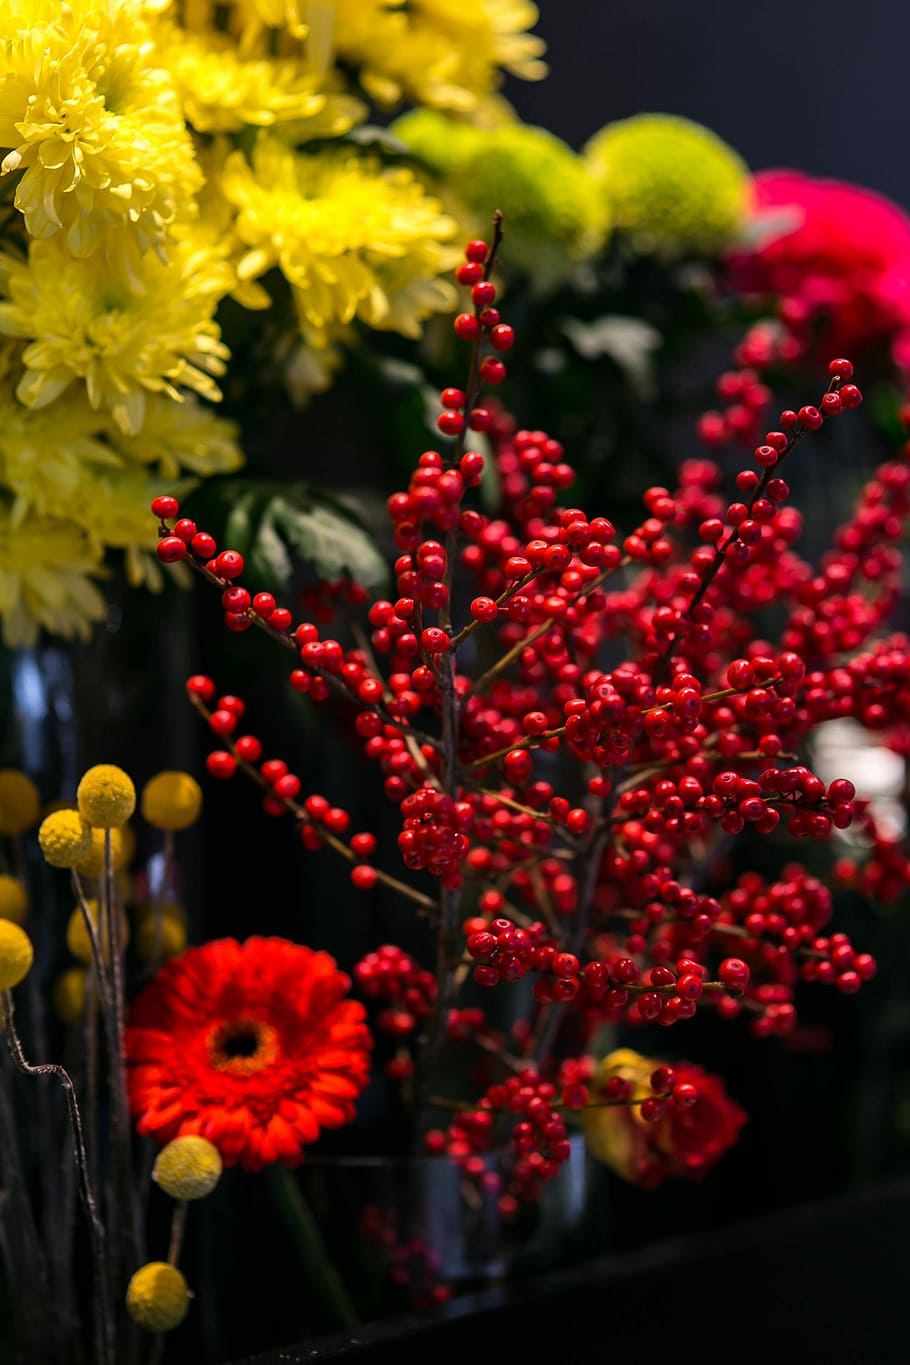 vermelho, arranjo colorido, flores, colorido, arranjo, flora, amarelo, buquê, bonita, composição